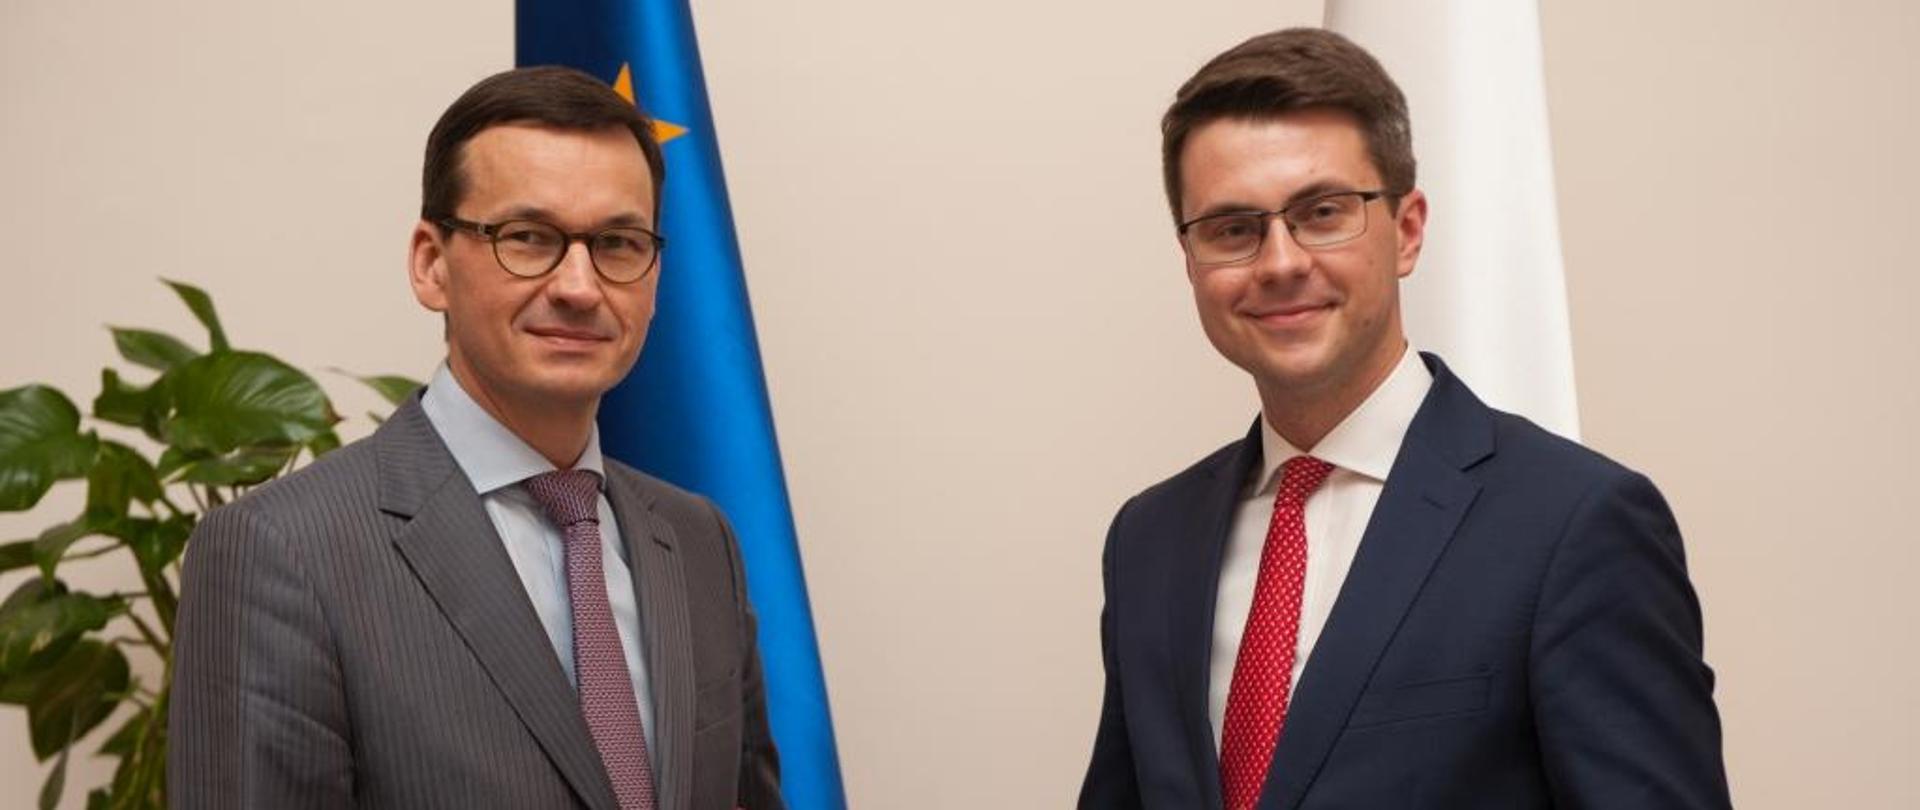 Premier Morawiecki wręcza dokument Piotrowi Mullerowi, w tle flagi Polski i UE